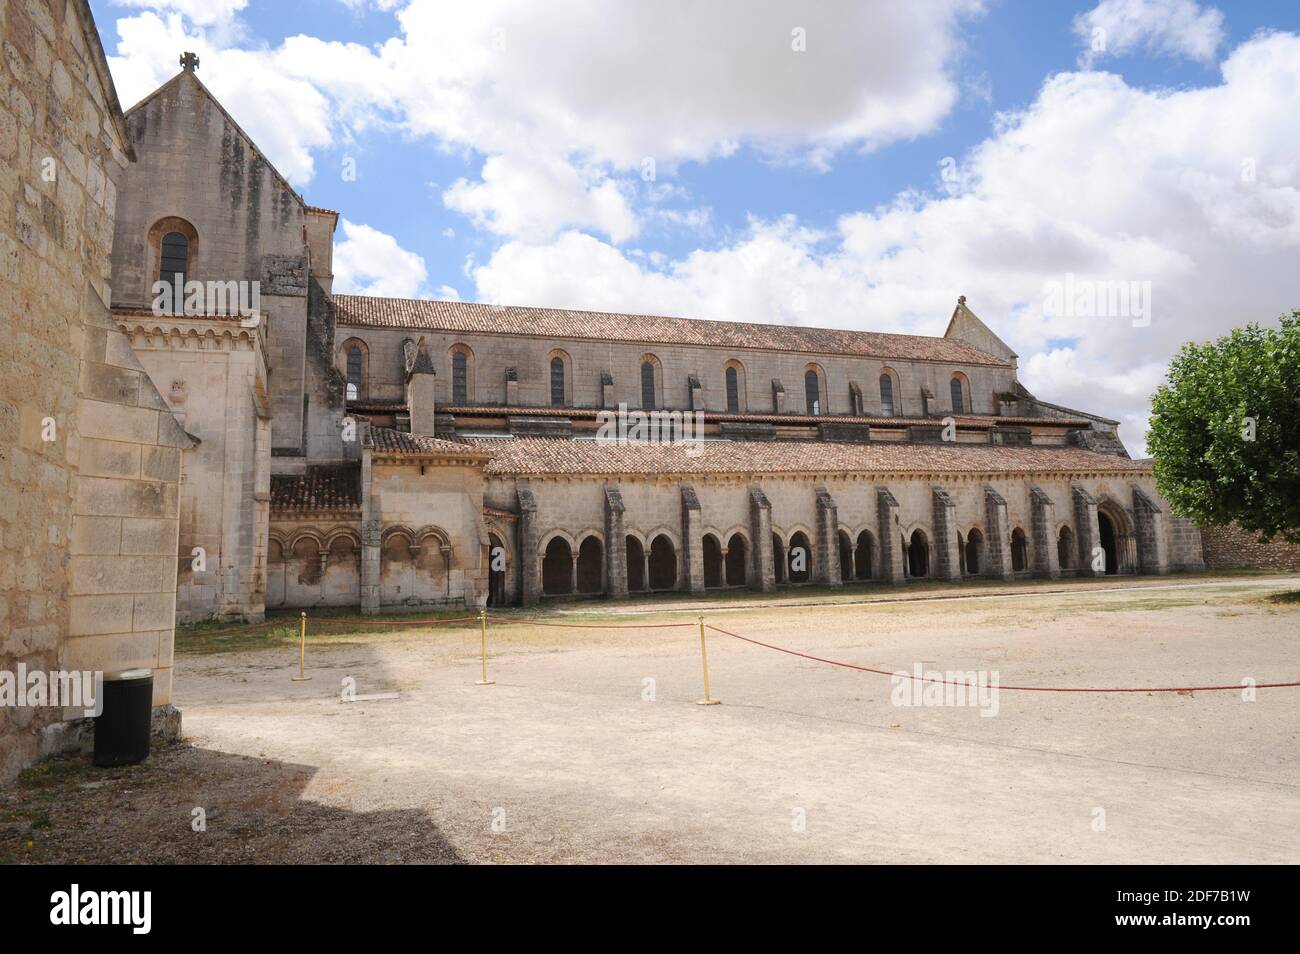 Monasterio de Santa María la Real de las huelgas, cisterciense siglo 12. Provincia de Burgos, Castilla y León, España. Foto de stock